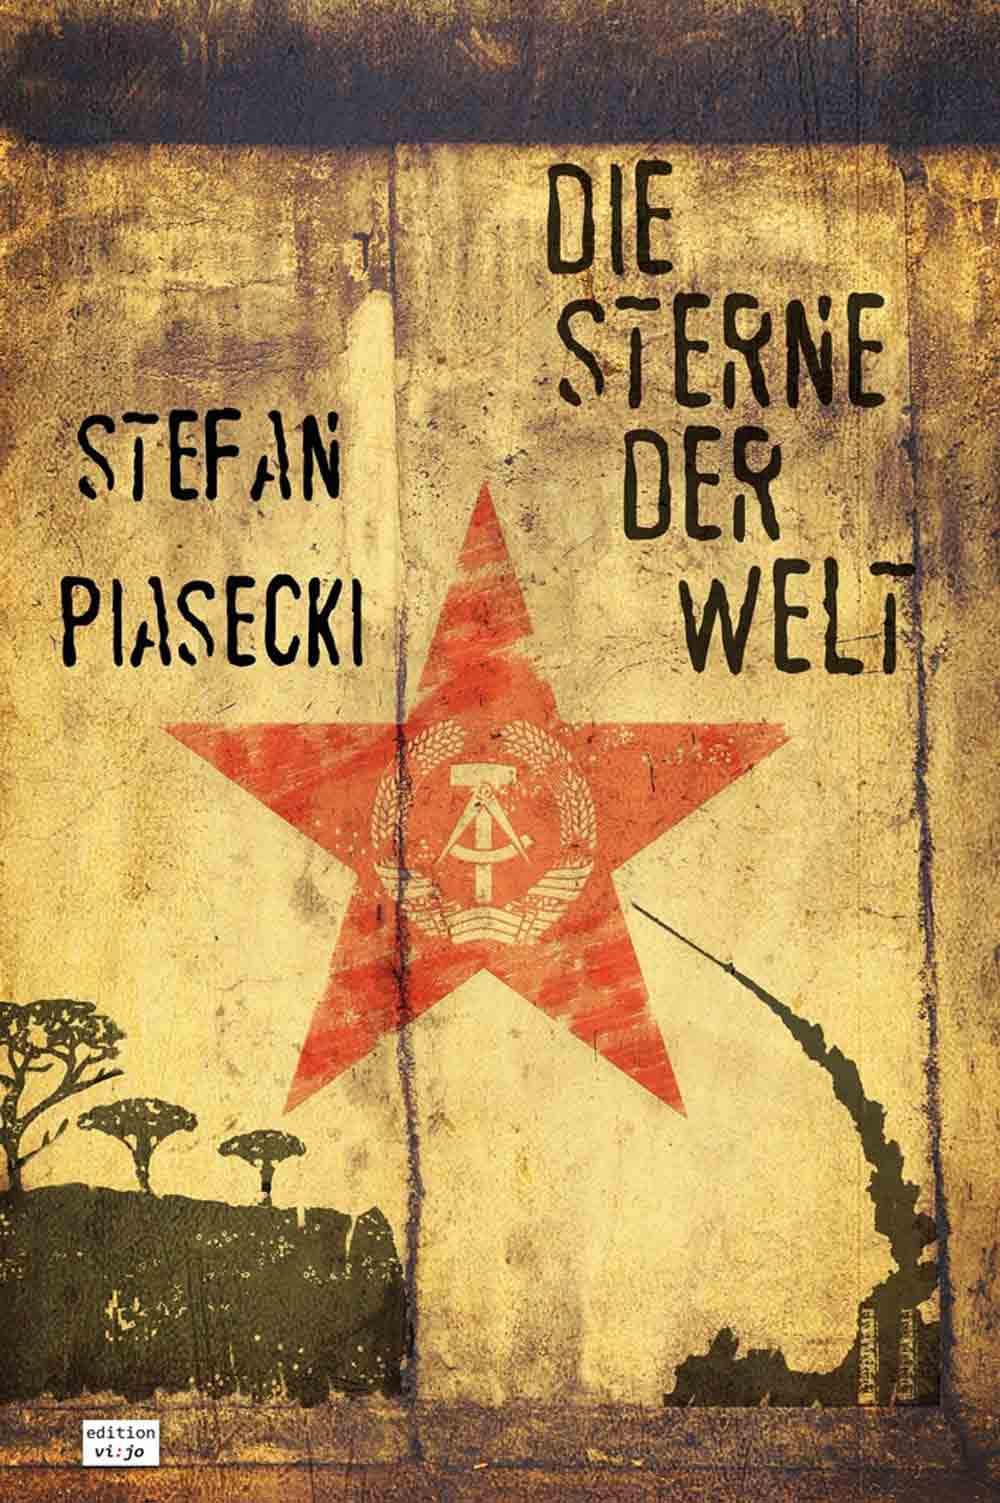 Lesetipps für Gütersloh, Stefan Piasecki, »Die Sterne der Welt«